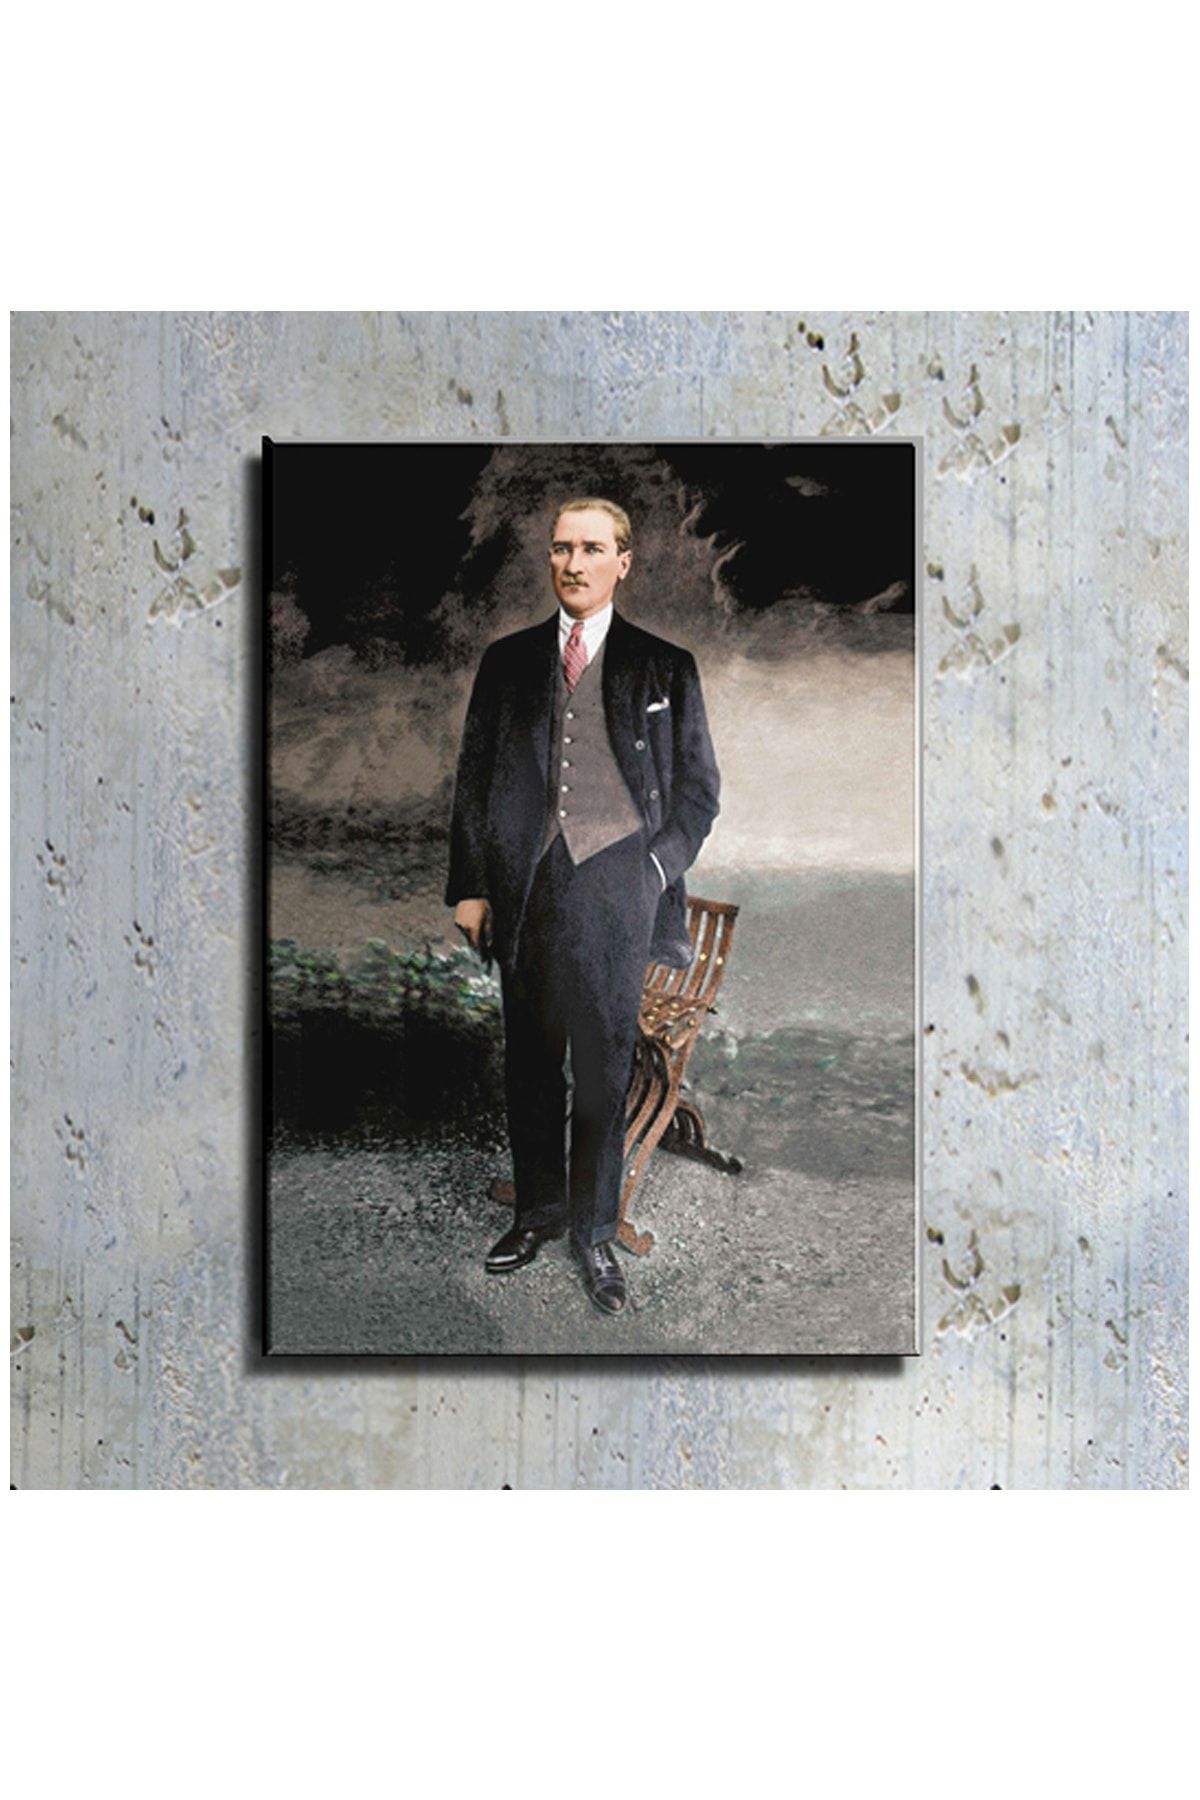 mağazacım Atatürk Takım Elbiseli Boy Resmi (70x100 Cm) Kanvas Tablo Tbl1215